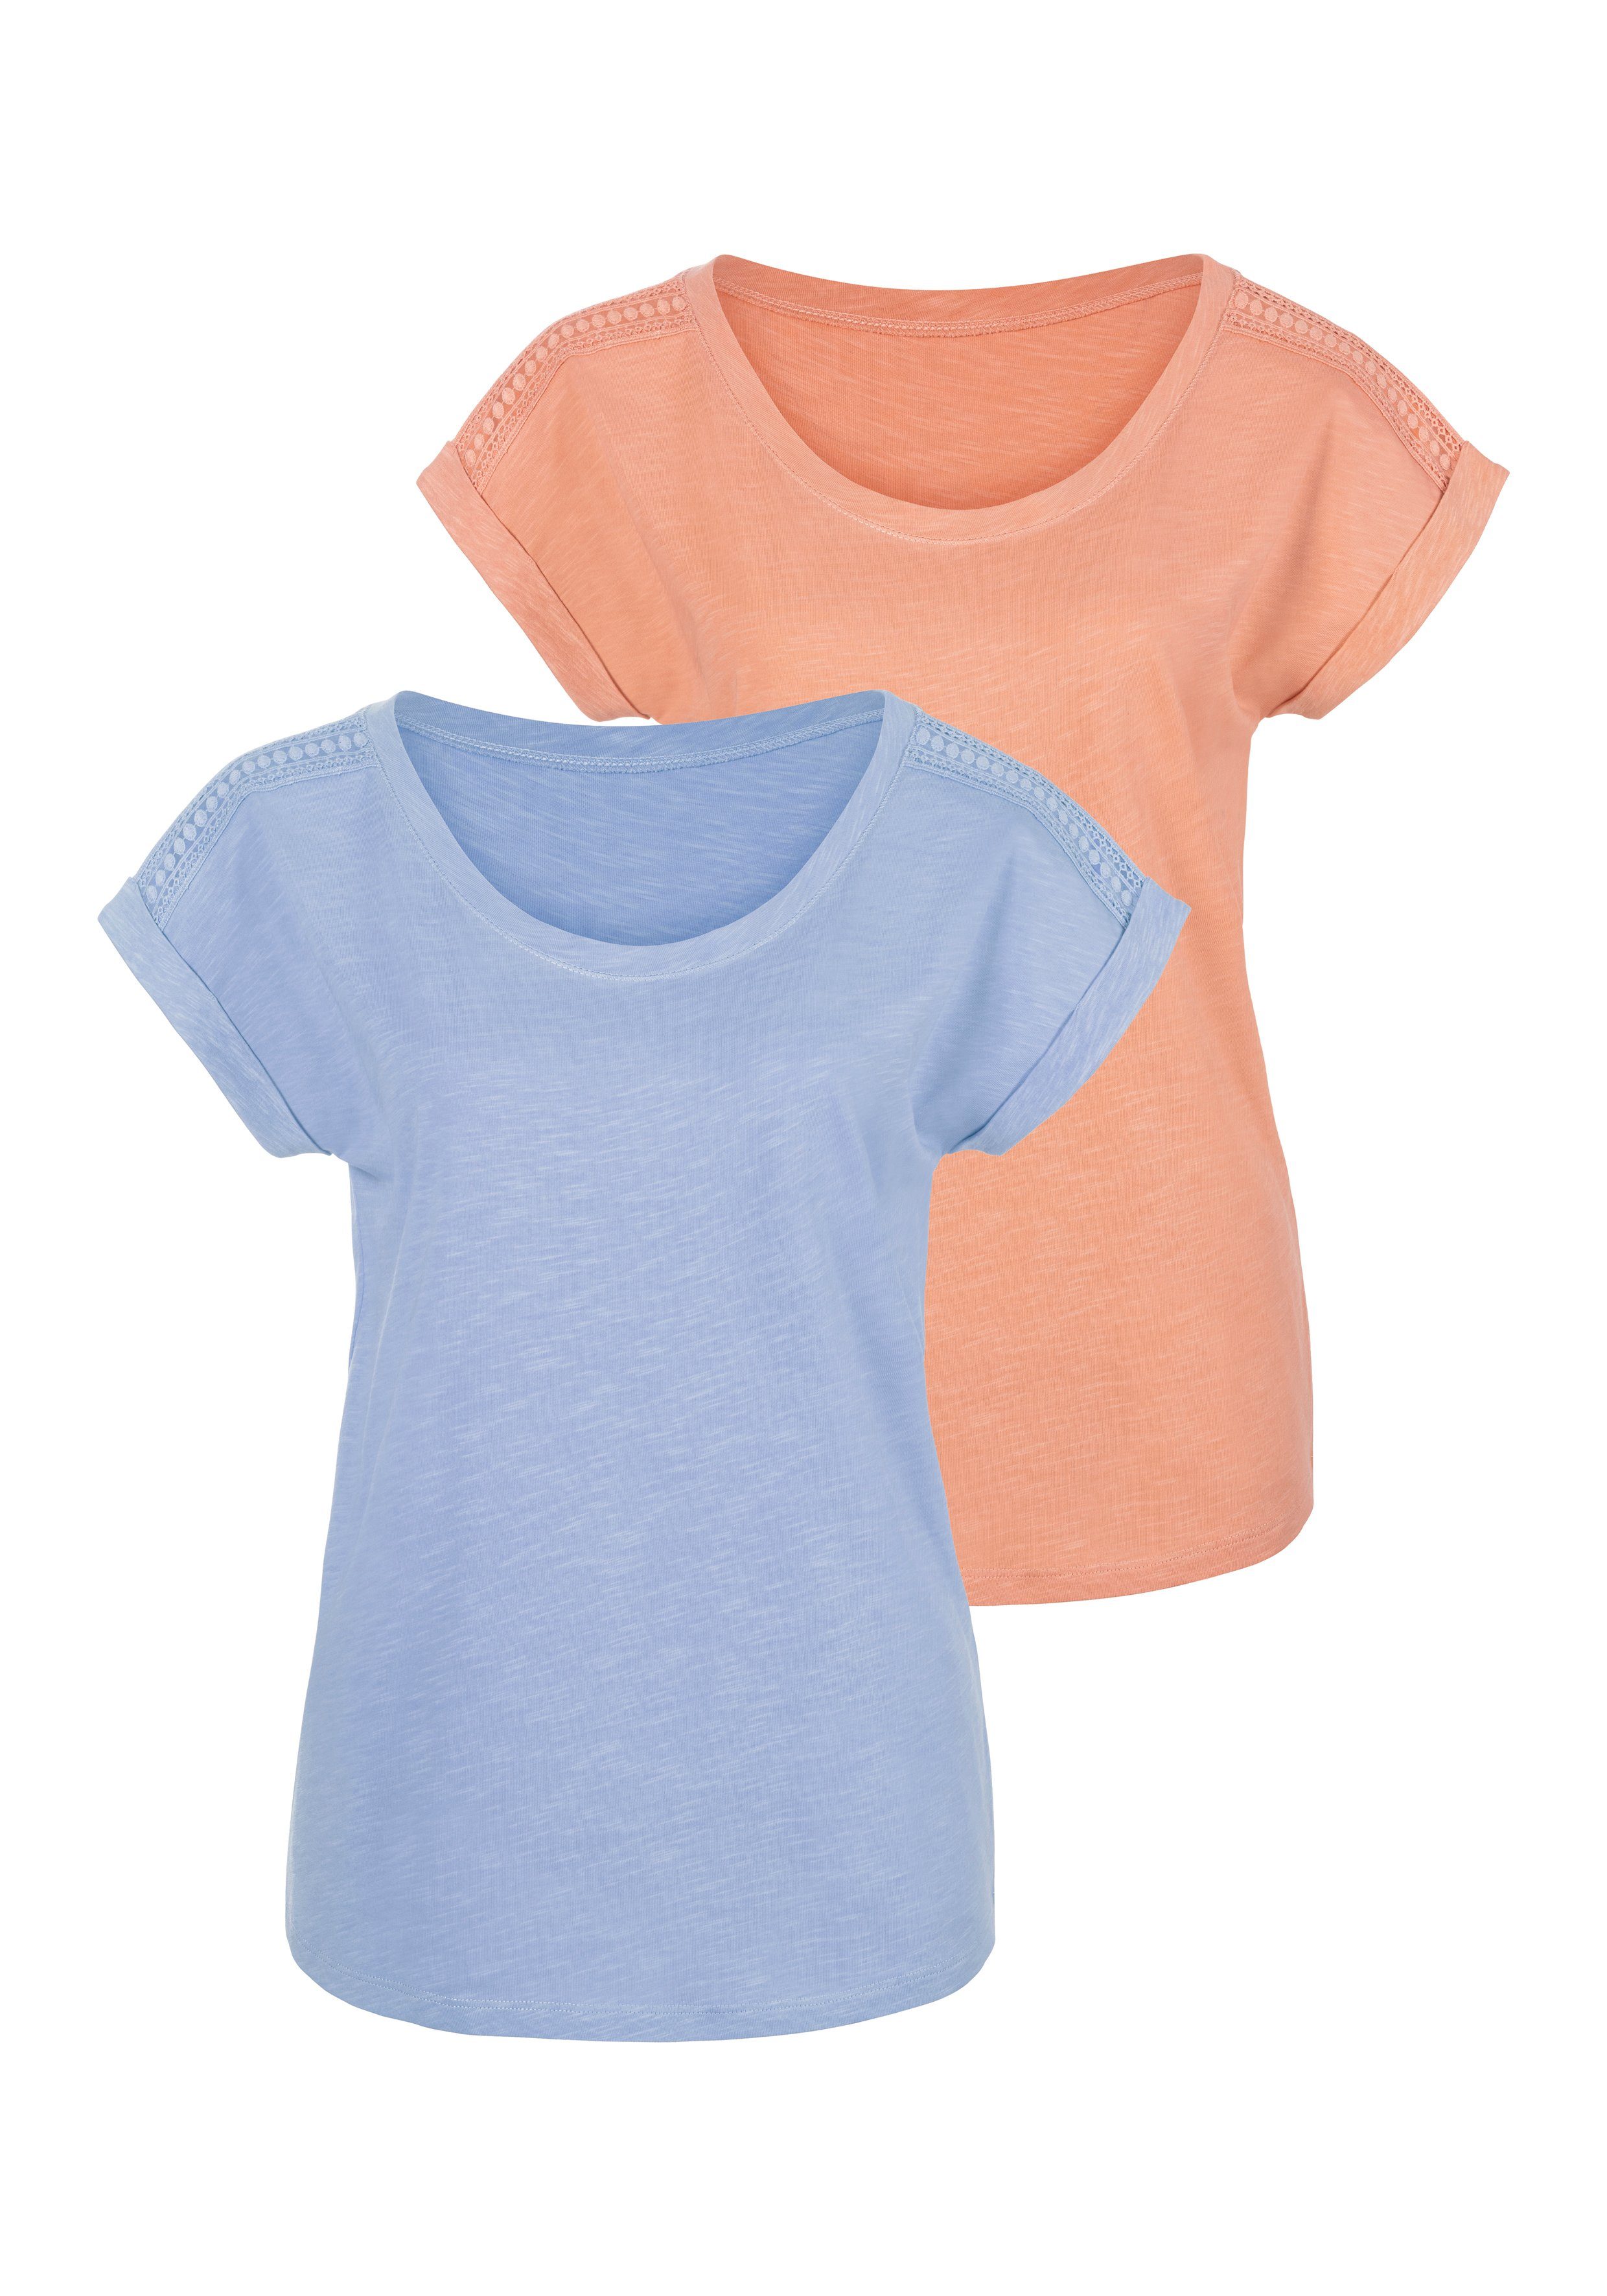 [Im Angebot zum Schnäppchenpreis] T-Shirt hellblau Häkelspitze mit an 2er-Pack) der (Packung, orange, Schulter Vivance